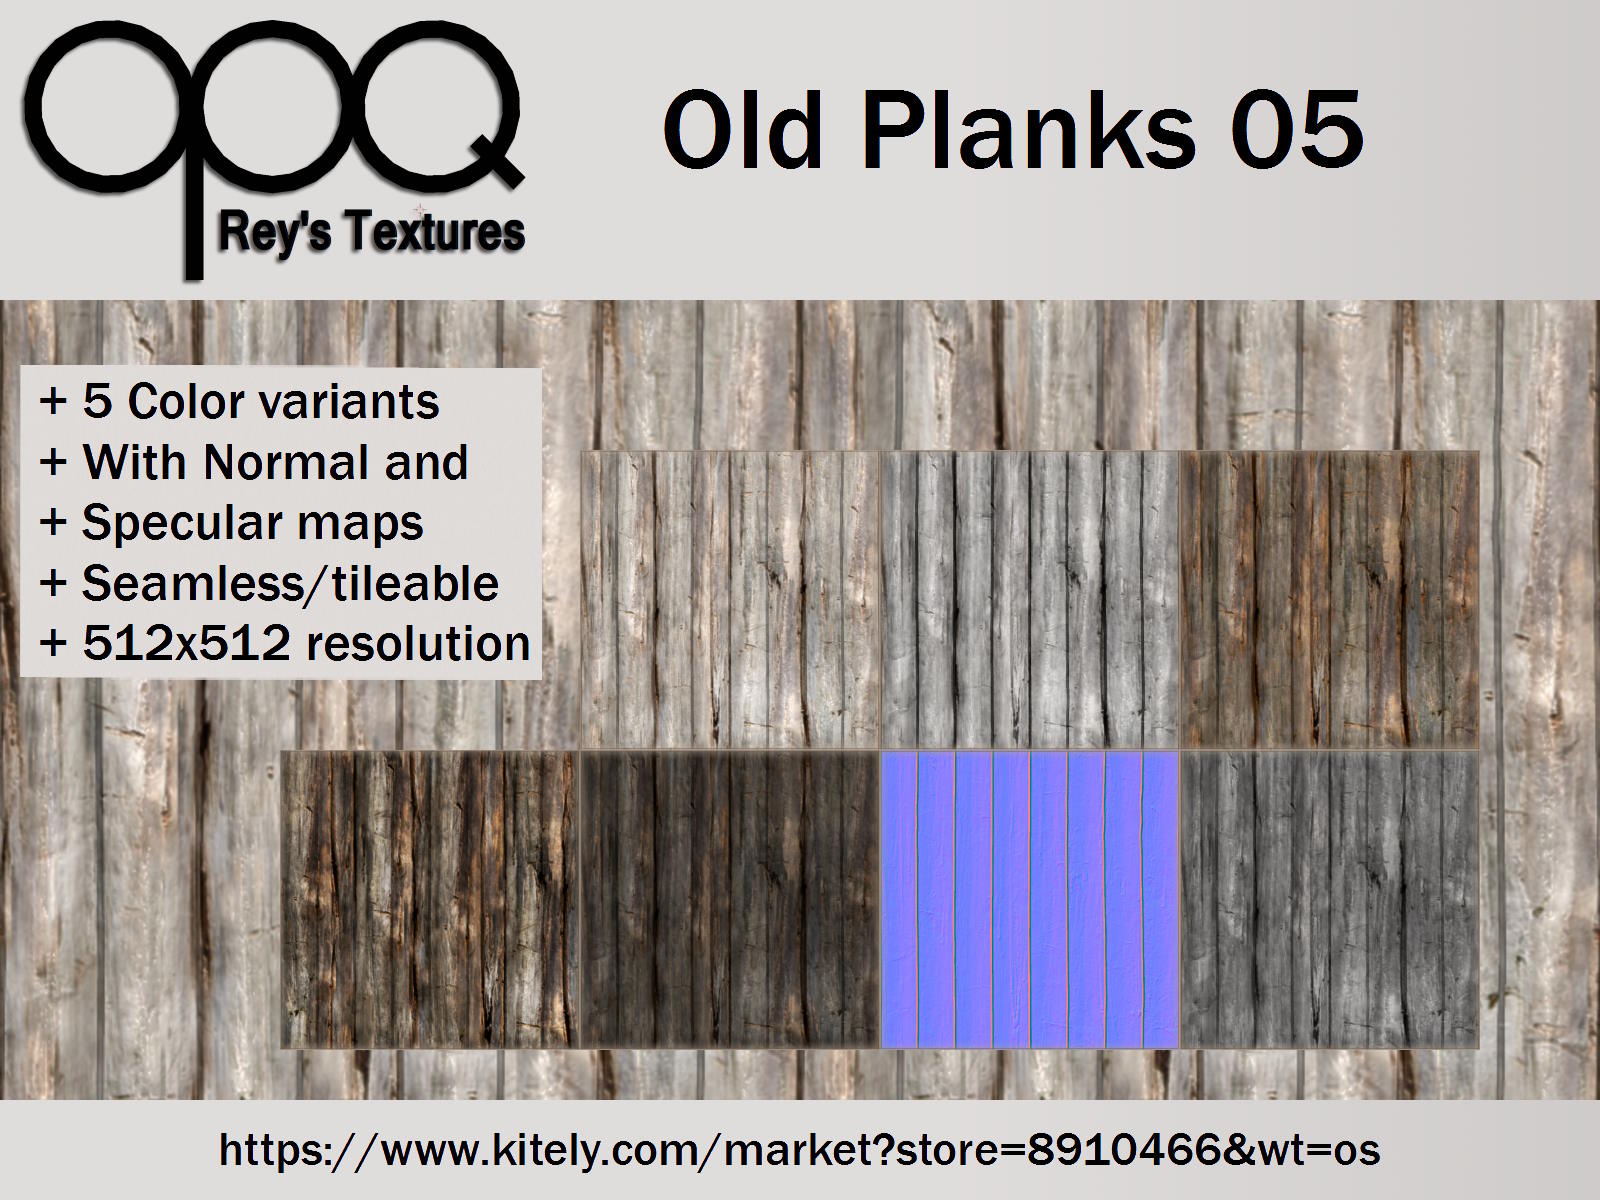 Rey's Old Planks 05 Poster Kitely.jpg